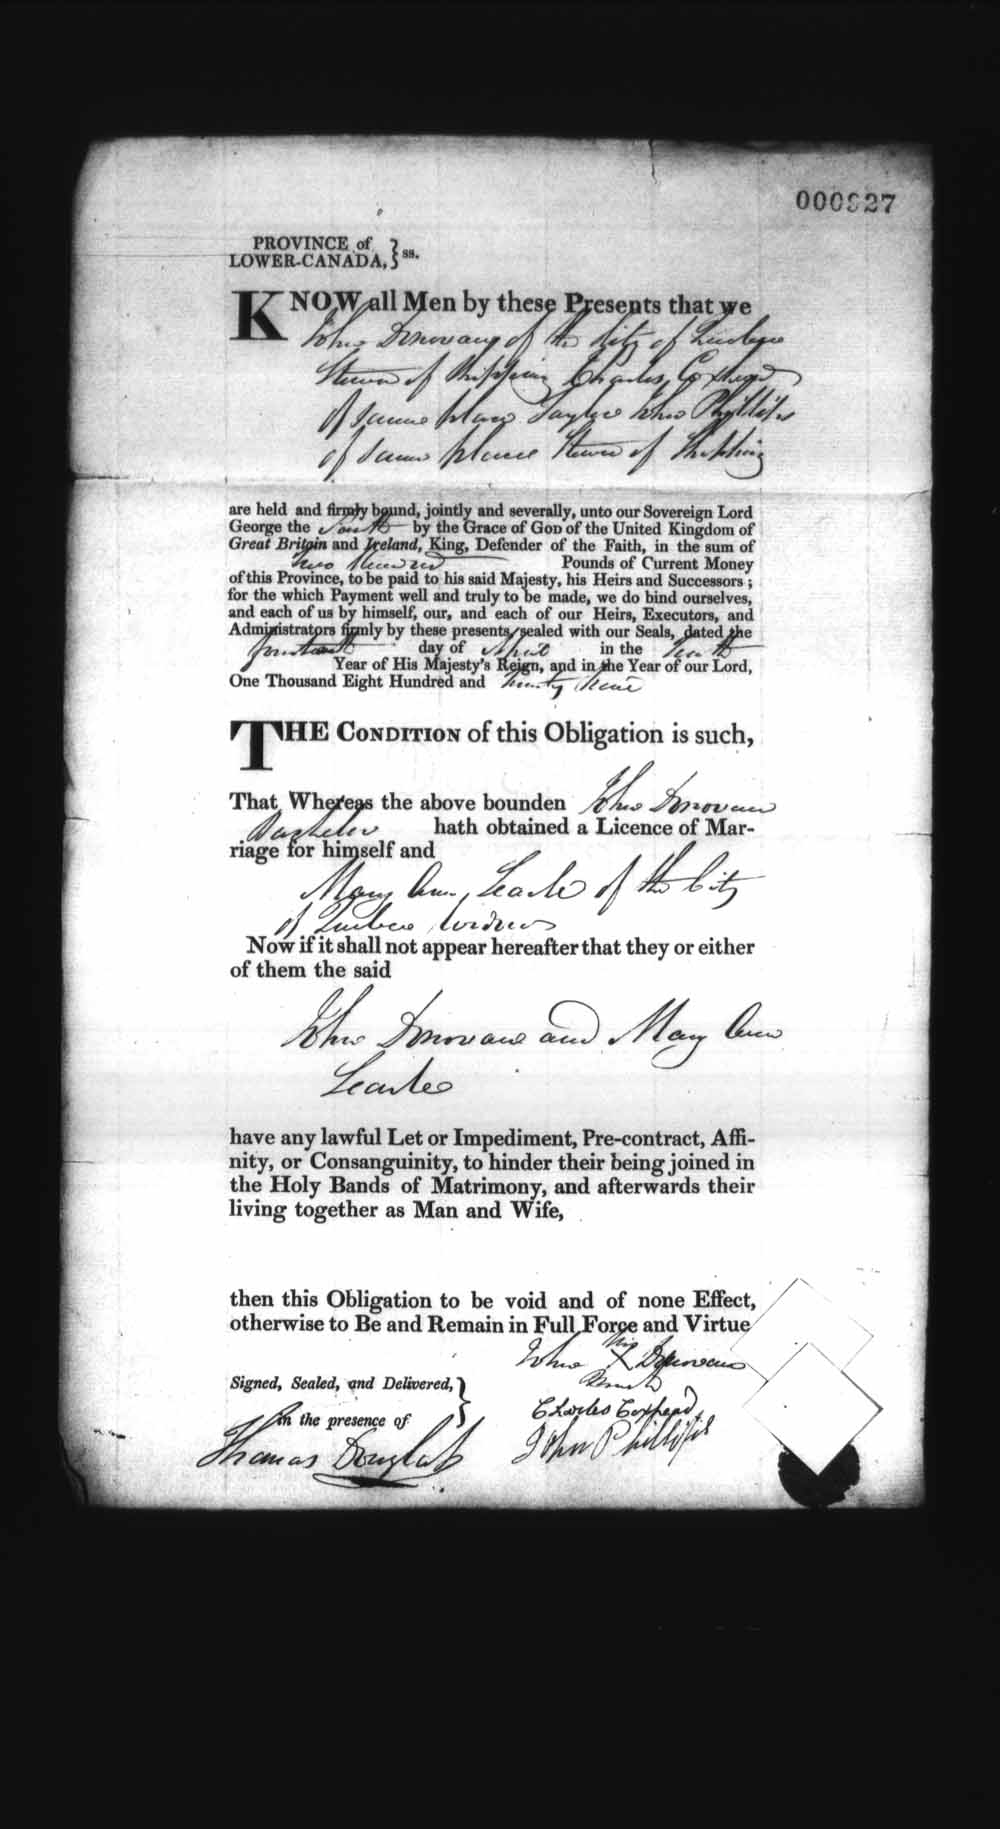 Page numérisé de Cautionnements de mariages pour le Haut-Canada et le Bas-Canada (1779-1865) pour l'image numéro: e008237031